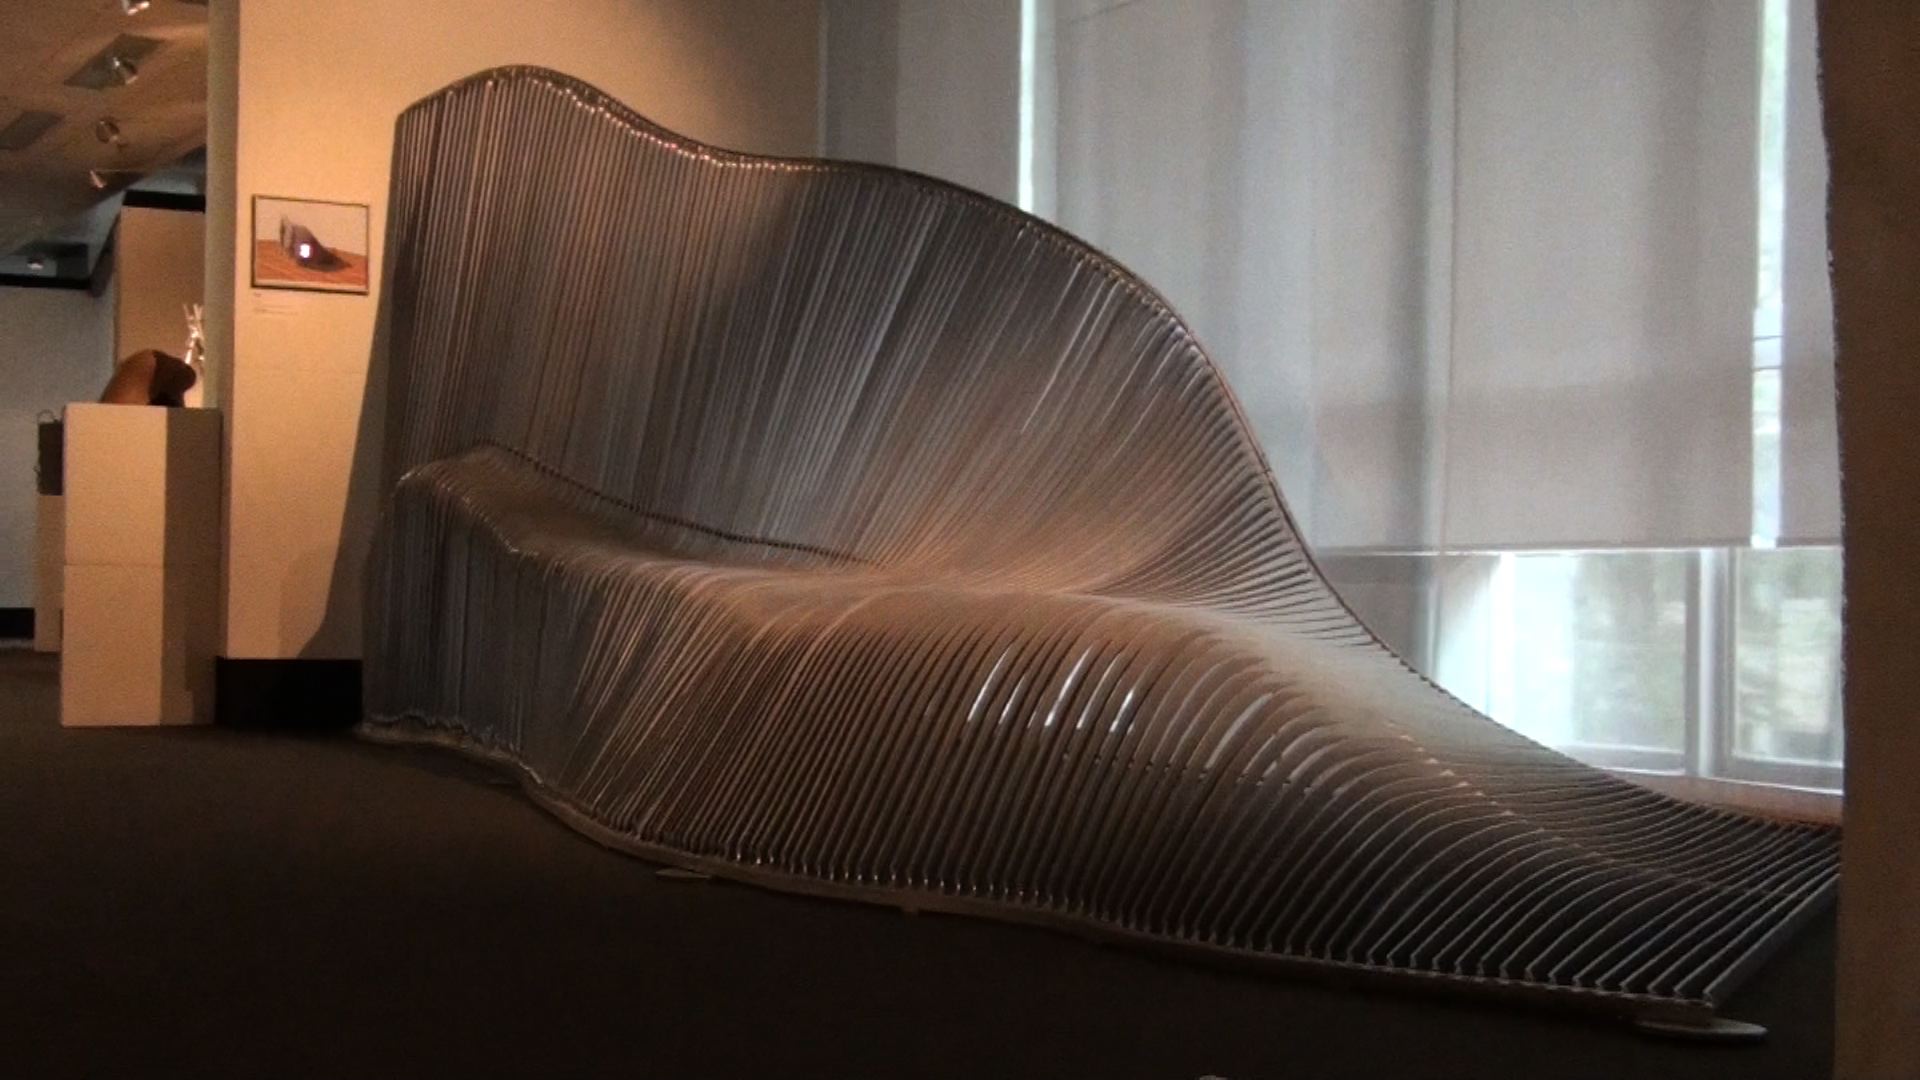 Convivio, Aluminum, 8'x8'x4', 2013, Milan, Italy